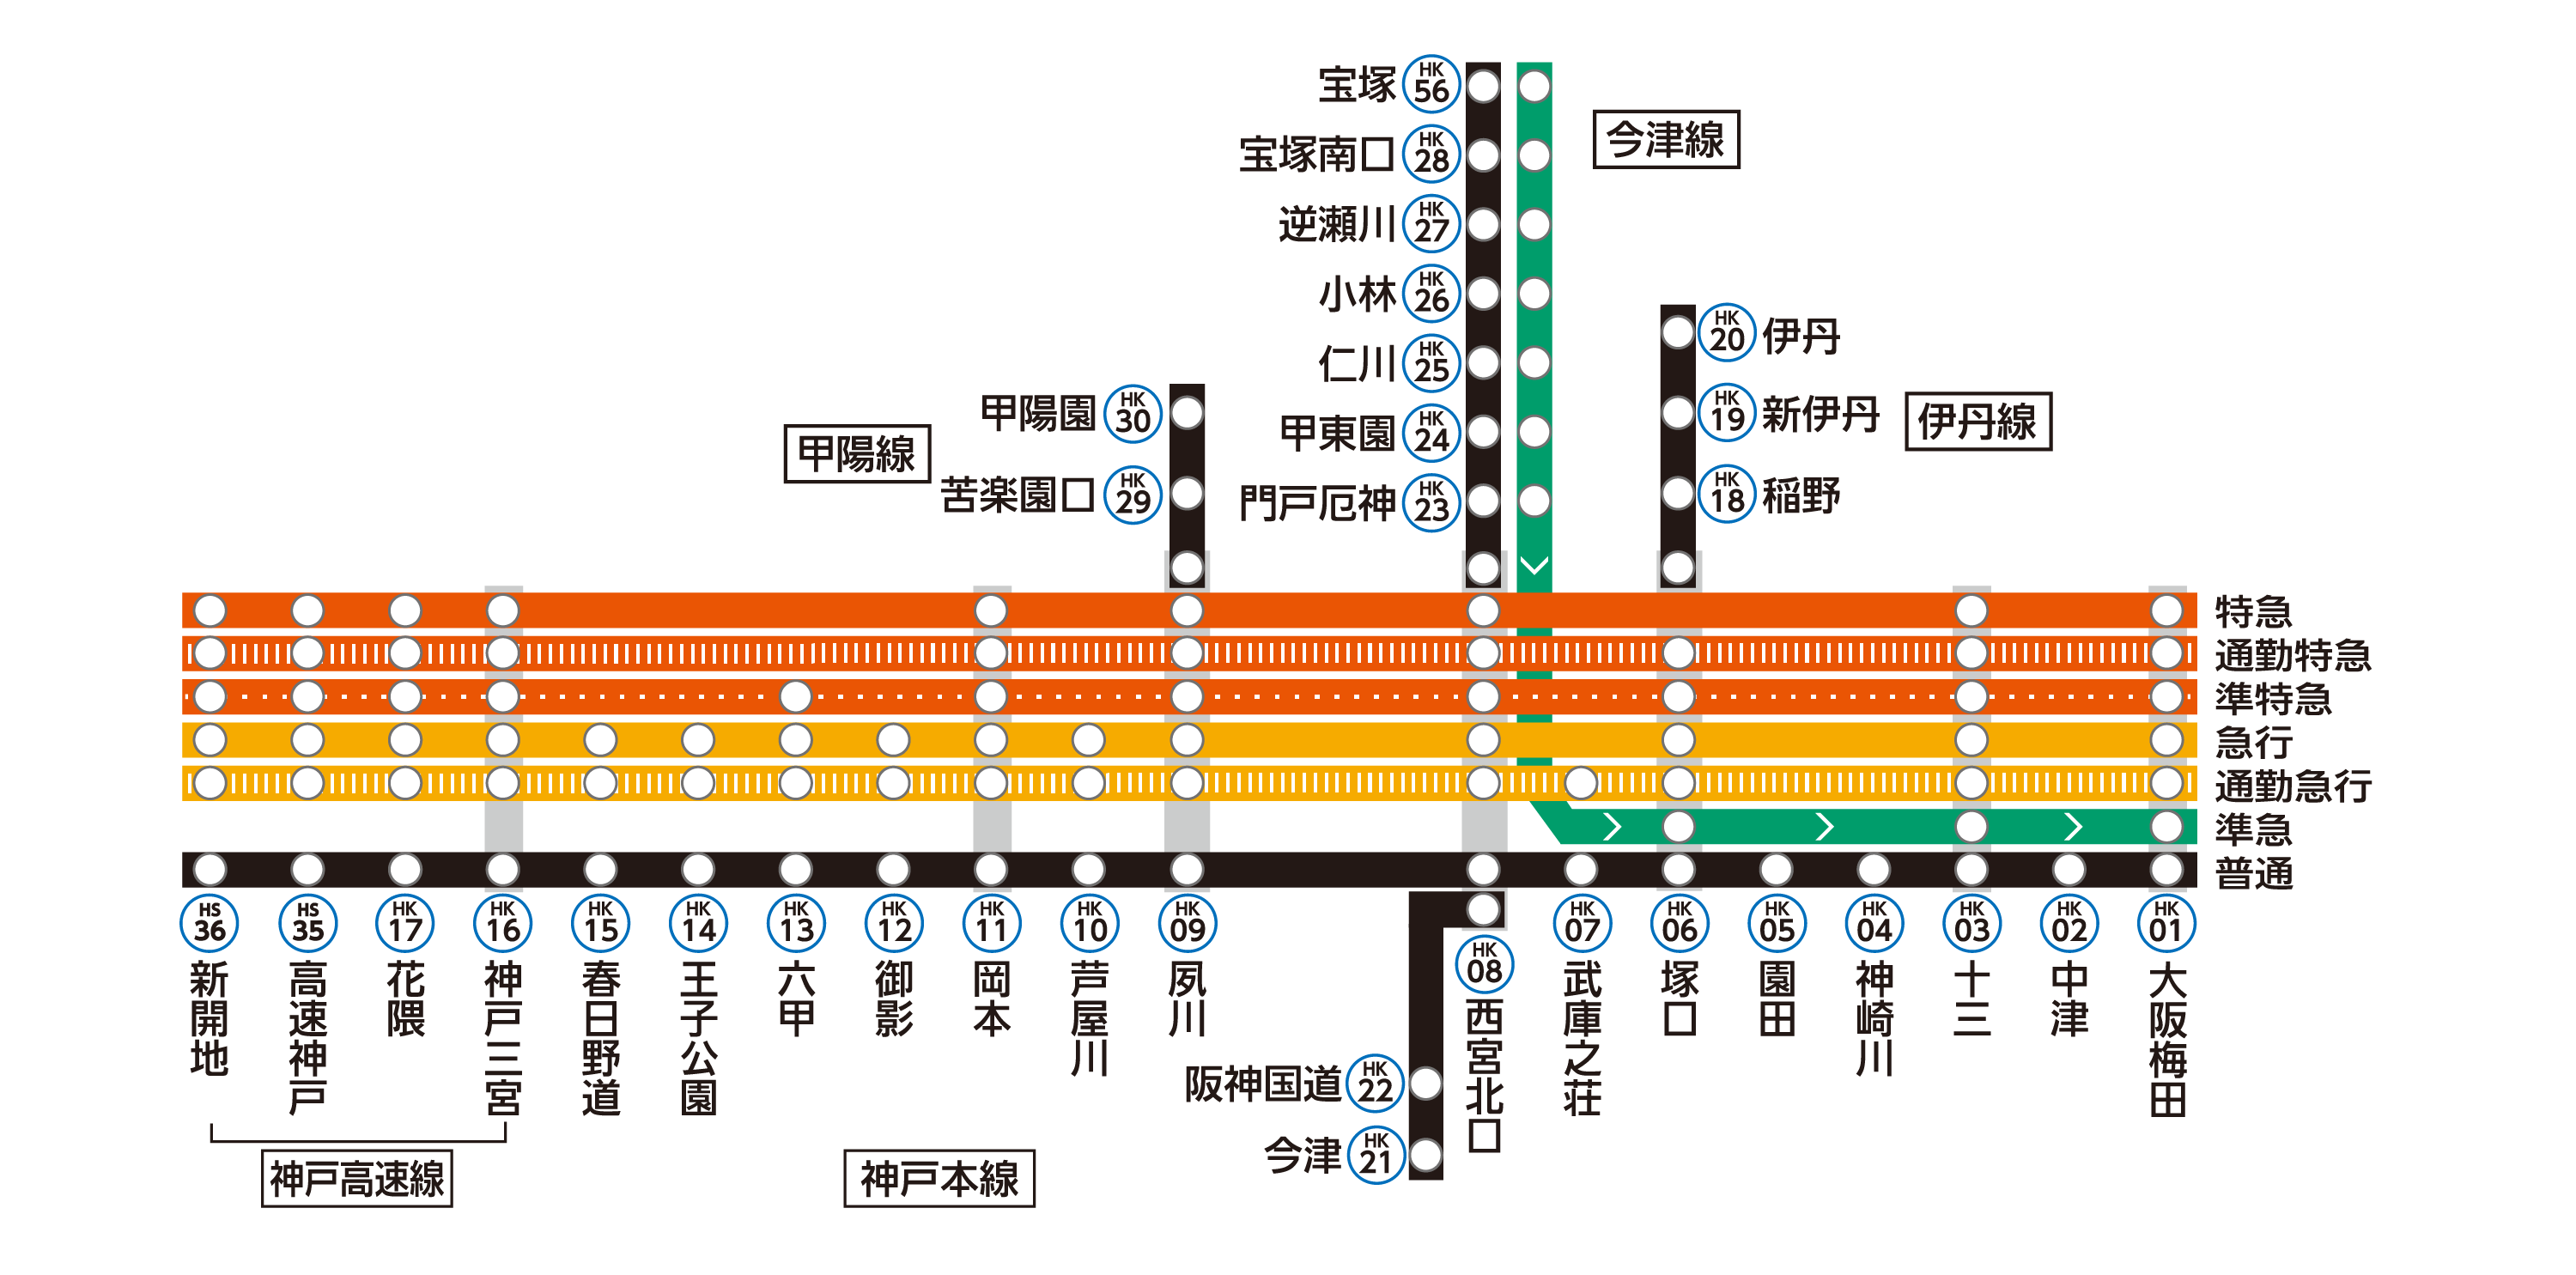 神戸線は神戸本線・伊丹線・今津線・甲陽線から構成されています。
神戸線各駅の列車発車時刻や停車駅は、上部の「サービス施設一覧」から、各駅の時刻表ページをご確認ください。
